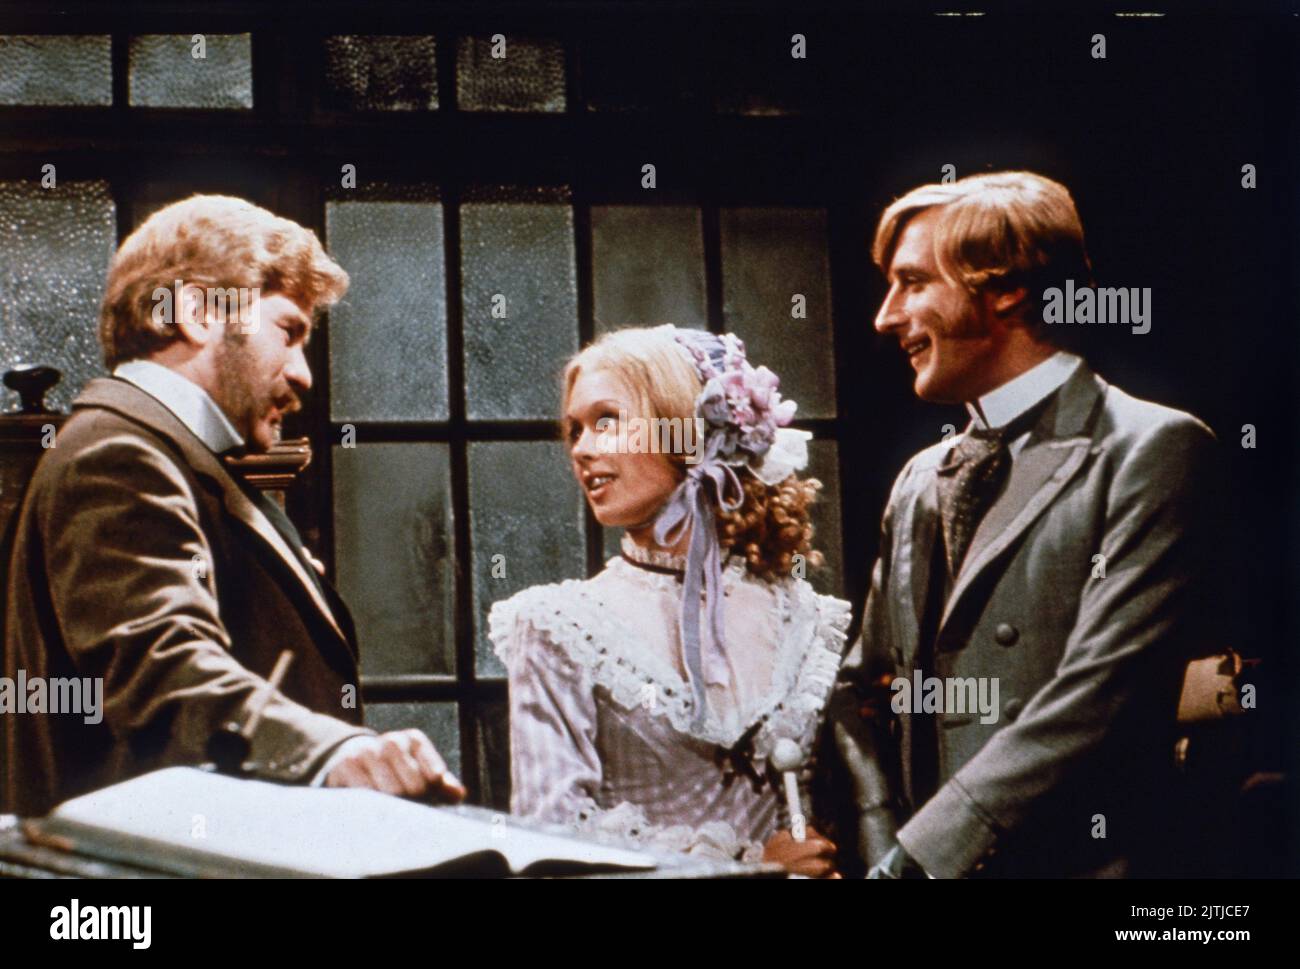 La línea Onedin, aka: Die Onedin-Linie, Großbritannien Fernsehserie, 1971 - 1980: Brian Darsteller Rawlinson, Jessica Benton, Philip Bond Foto de stock